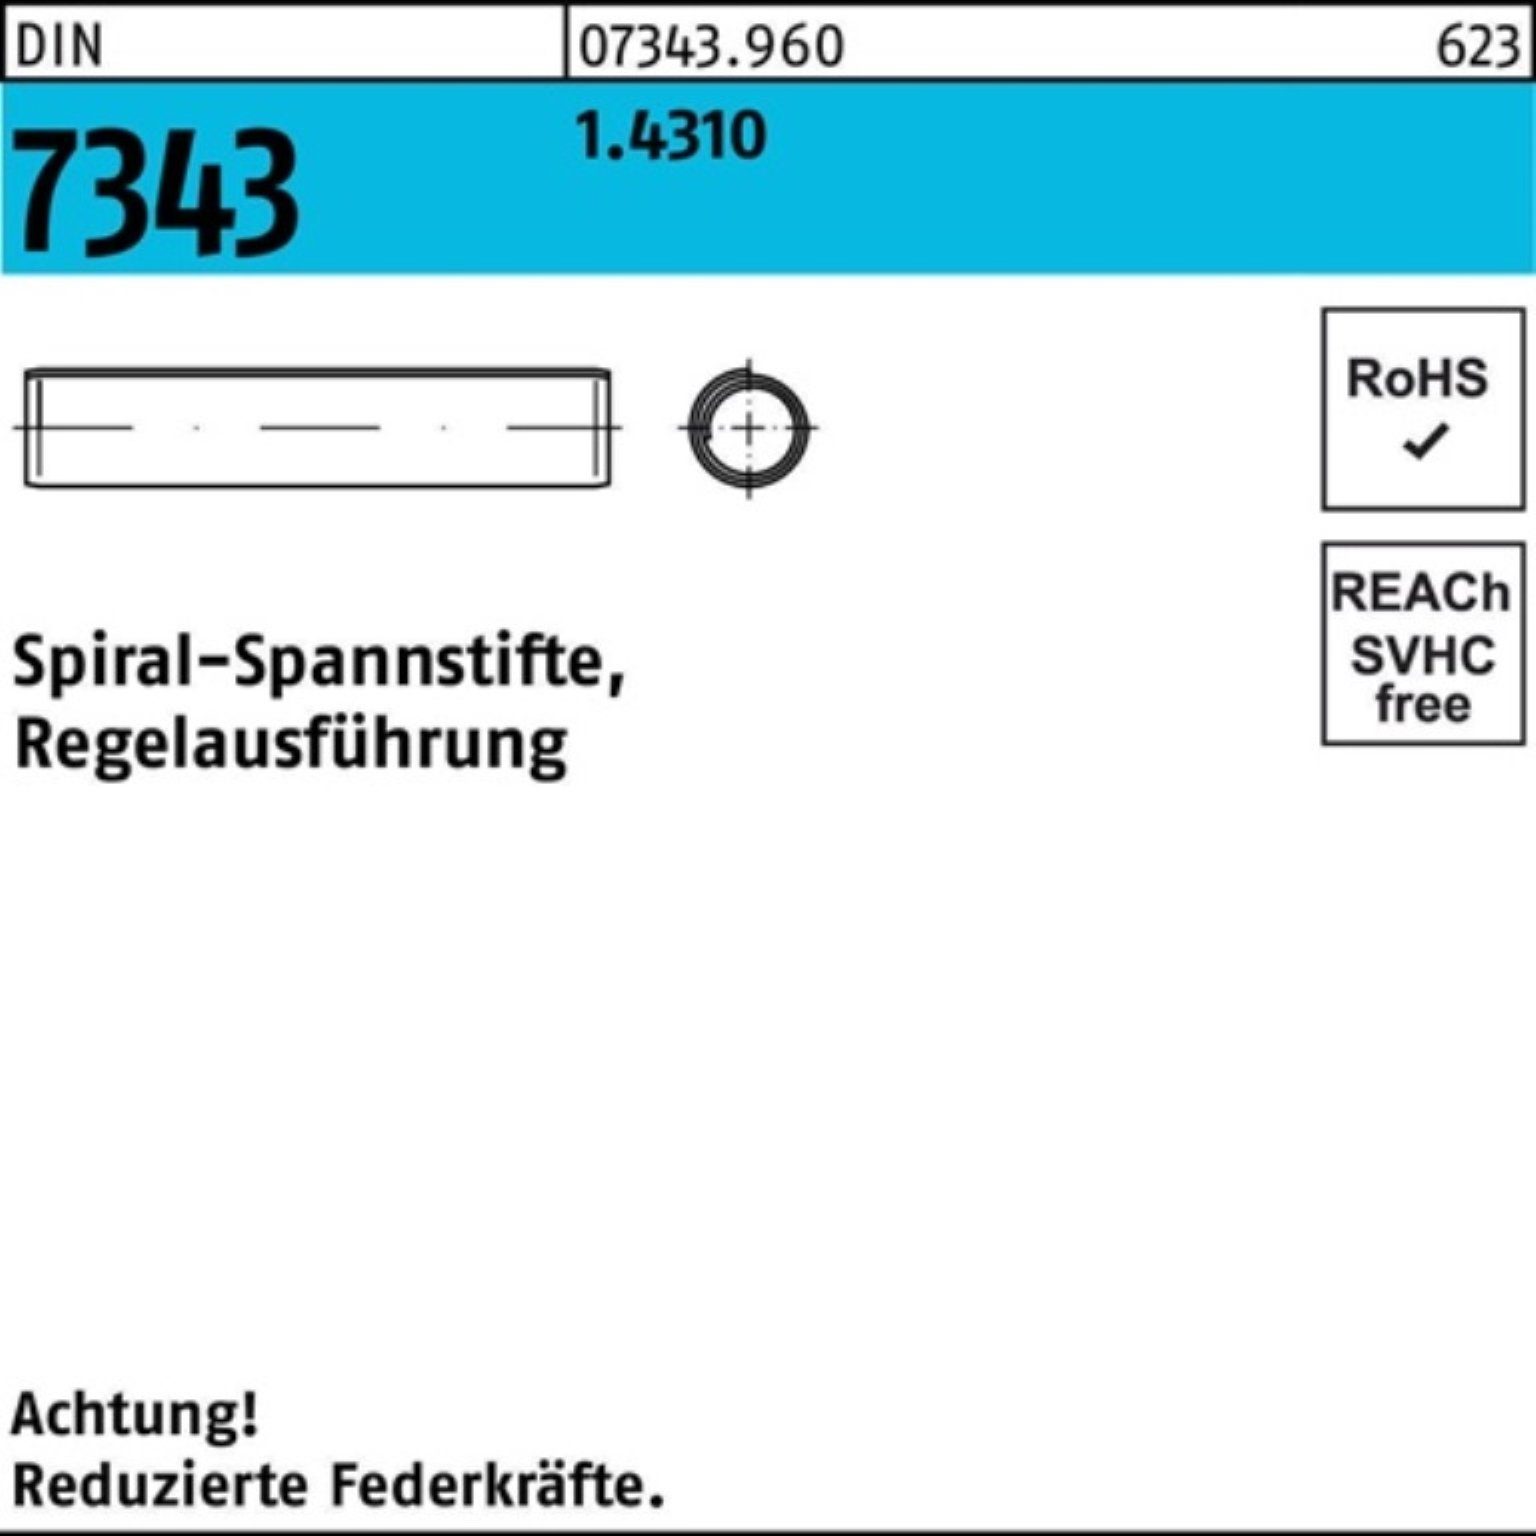 Reyher Spannstift 1000er Pack 8750 18 Regelausf. 7343/ISO Spiralspannstift DIN 1.4310 3x